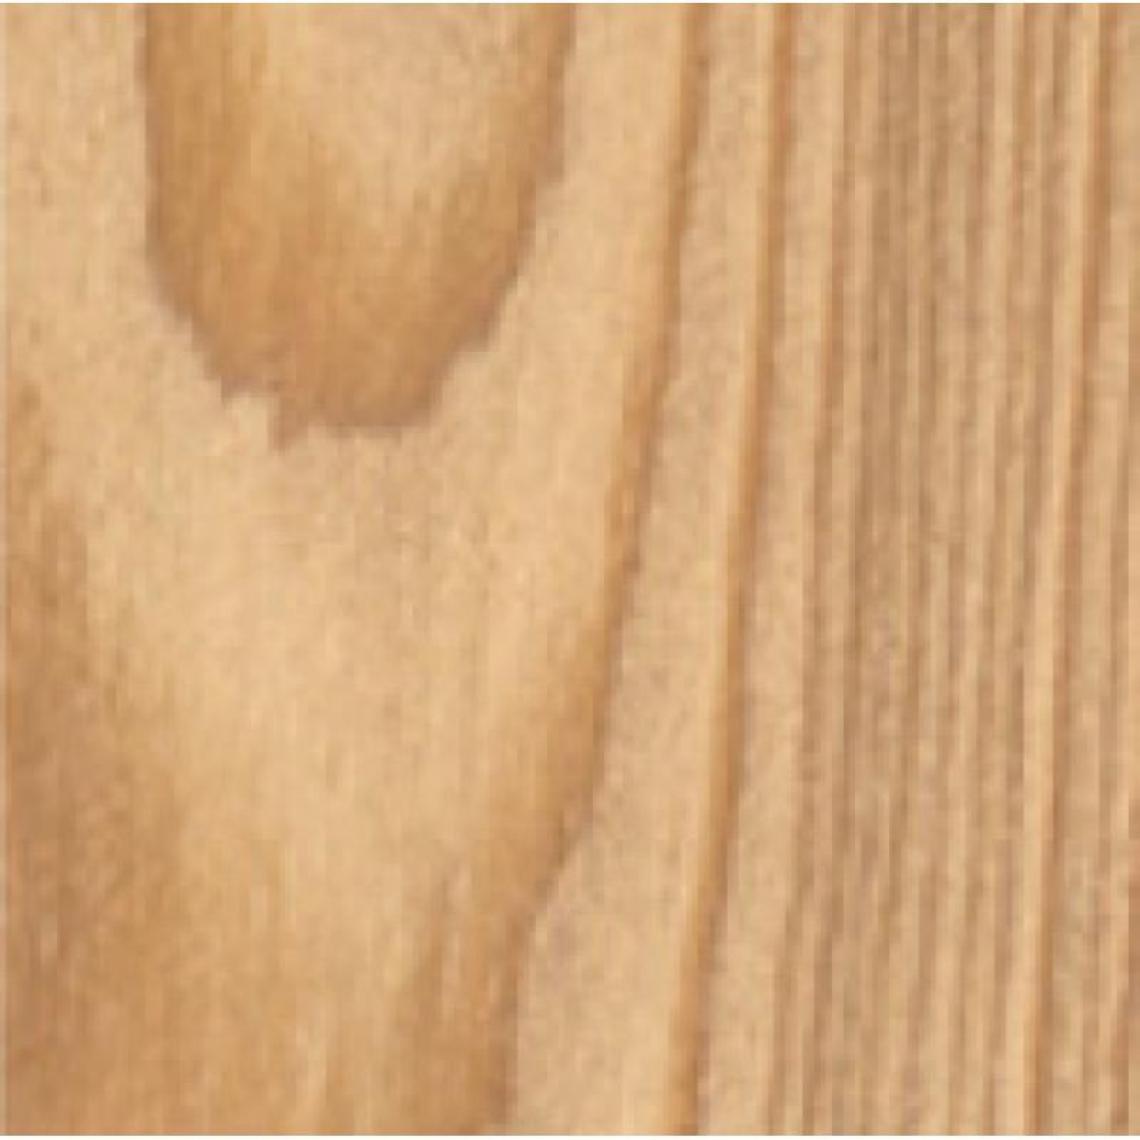 Blanchon - Lasures Aqua Polyuréthane Tech-Wood teinte bois grisé bidon de 5 - Produit de finition pour bois